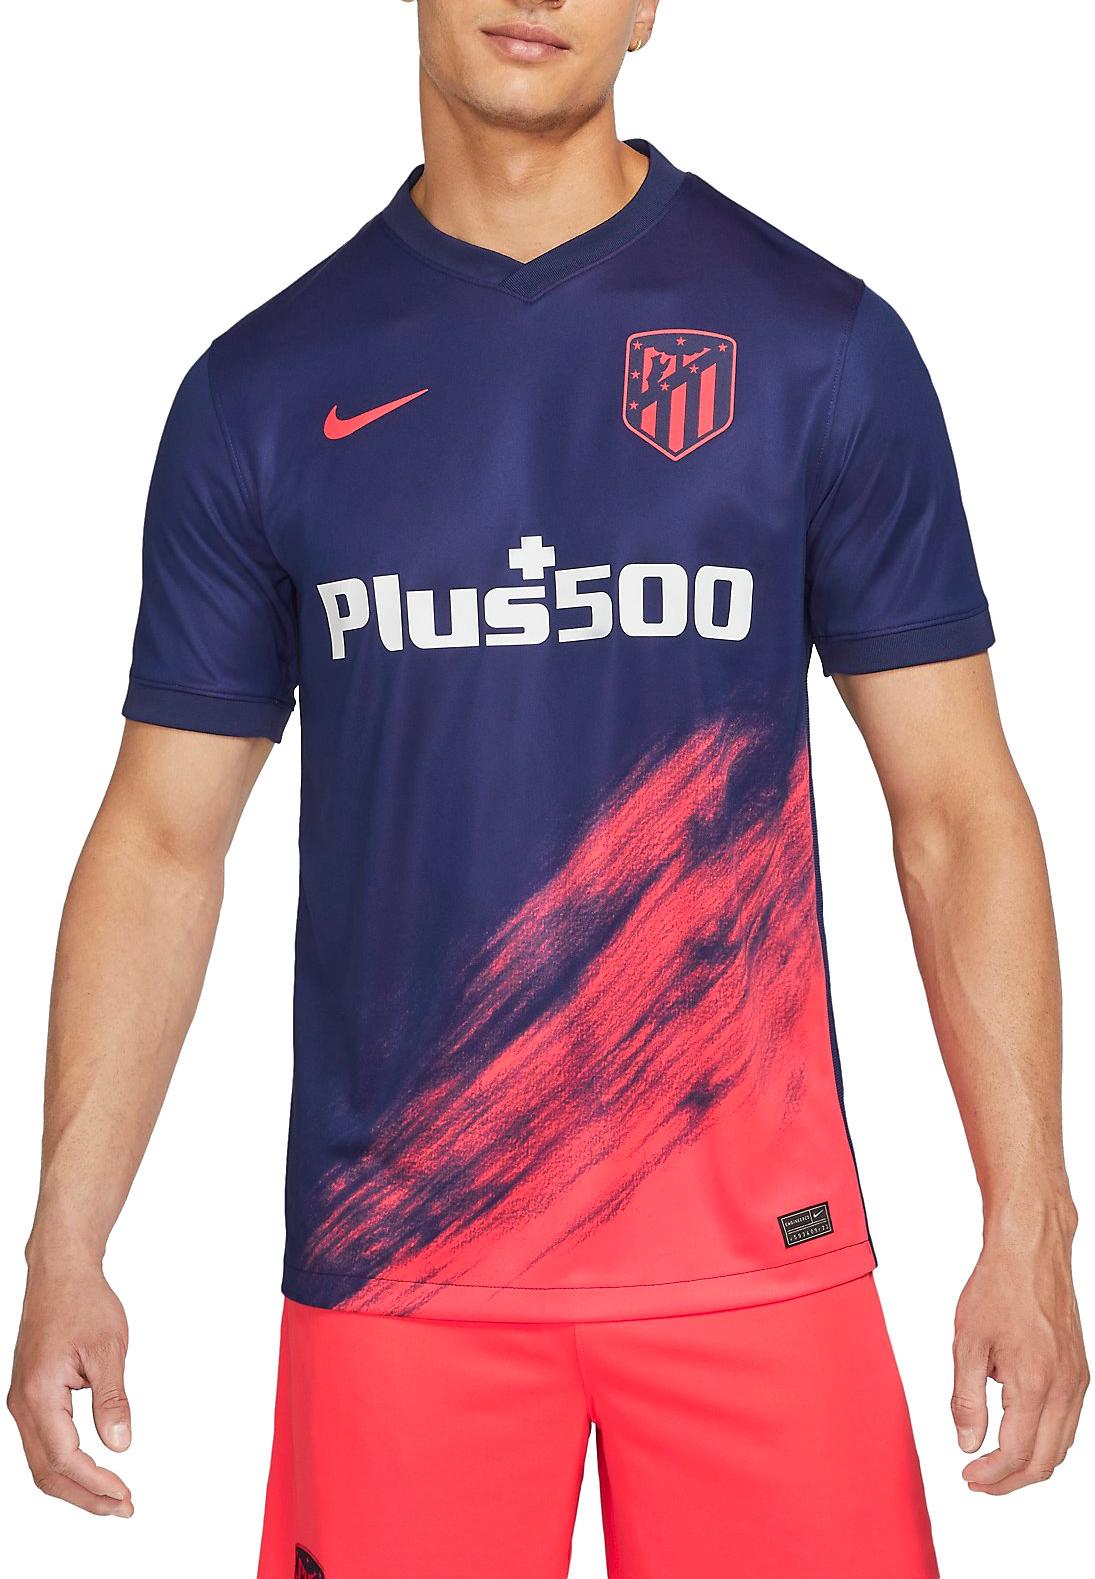 Restricciones El propietario repetición Camiseta Nike Atlético Madrid 2021/22 Stadium Away Men s Soccer Jersey -  11teamsports.es